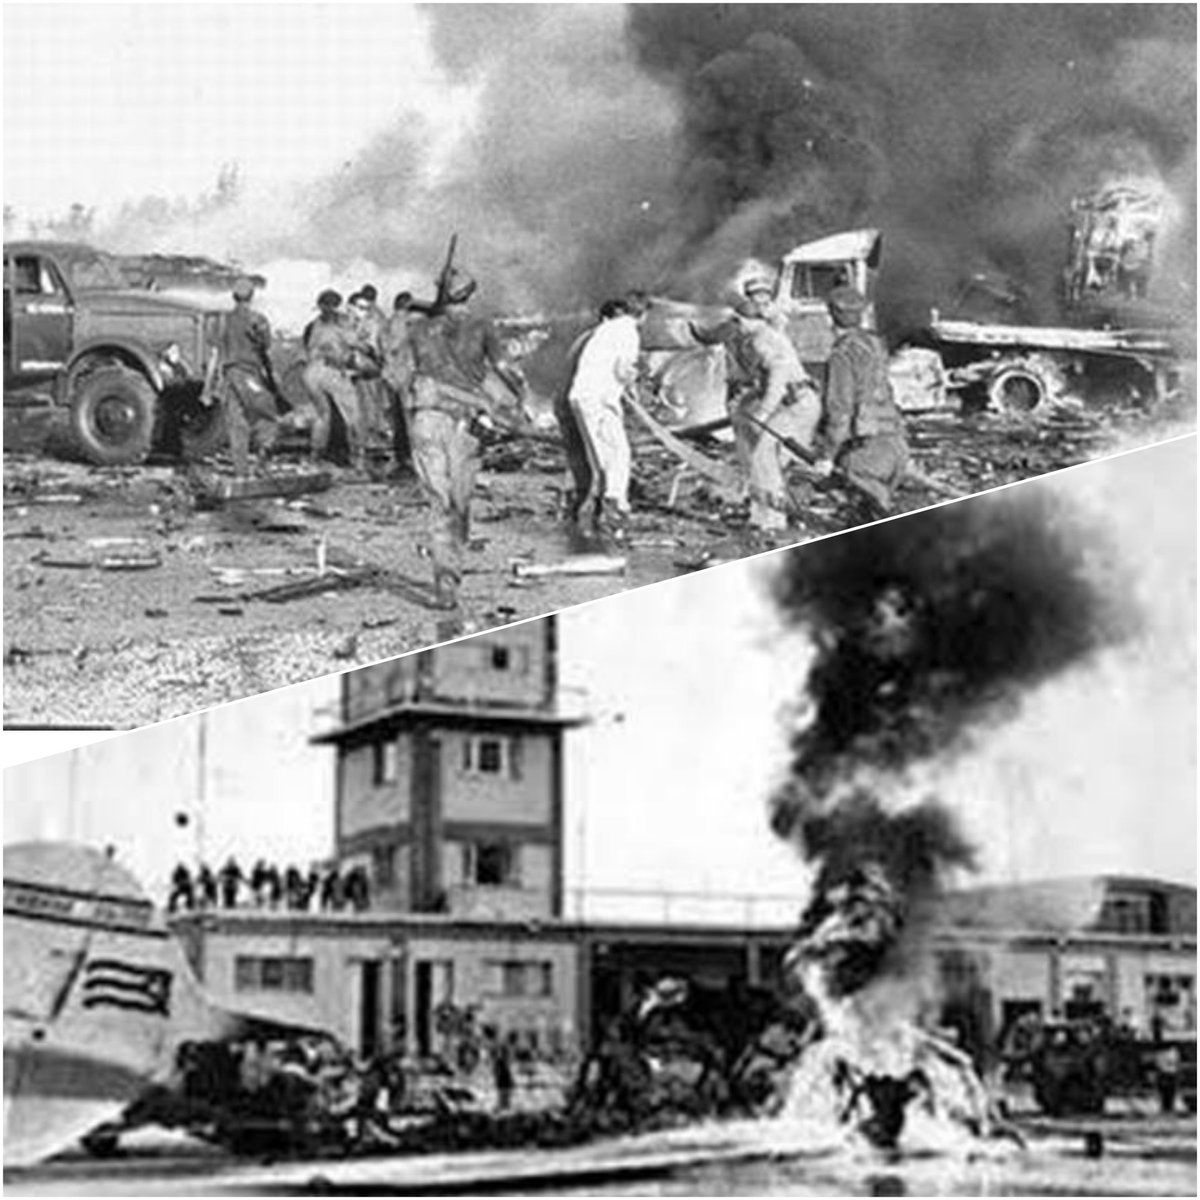 #InderGuisa. La invasión mercenaria a Cuba tuvo antecedente inmediato en el
amanecer del 15/4/1961. Aviones camuflados con insignias de la Fuerza Aérea Revolucionaria atacaron varios aeropuertos. El pueblo respondió en apego a su estirpe. 
#CubaViveEnSuHistoria